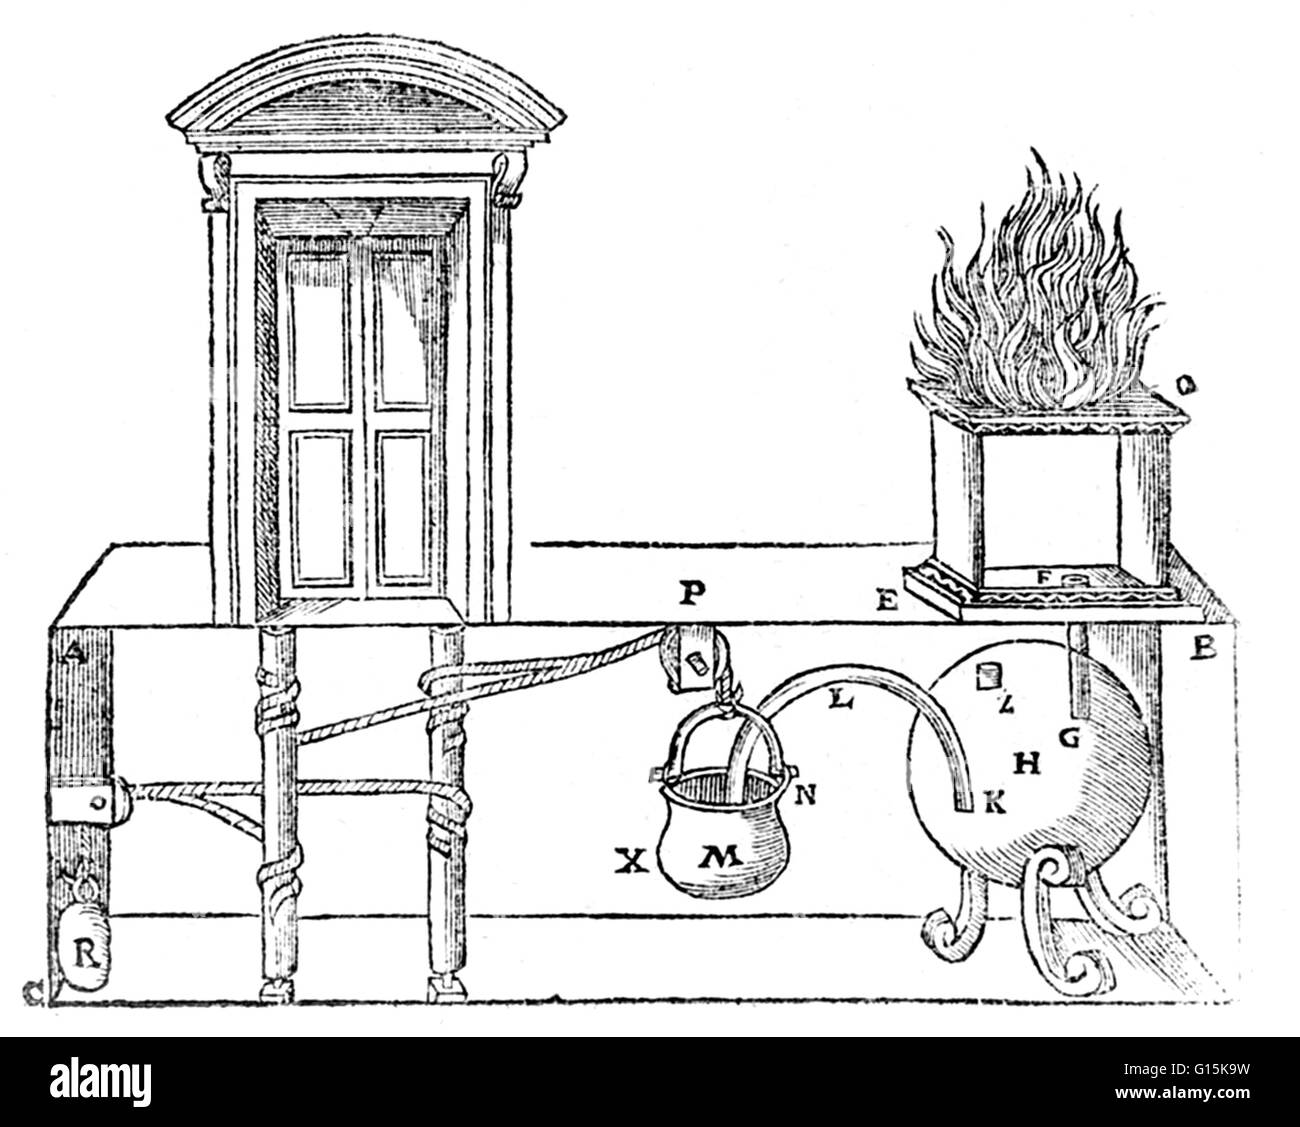 Grabado muestra los detalles de un aparato mecánico de vapor para abrir puertas. Héroe (o Heron) de Alejandría (10-70 AD) fue un matemático e ingeniero griego antiguo desde Alejandría, Egipto romano. Su obra es representativa de la época helenística scie Foto de stock